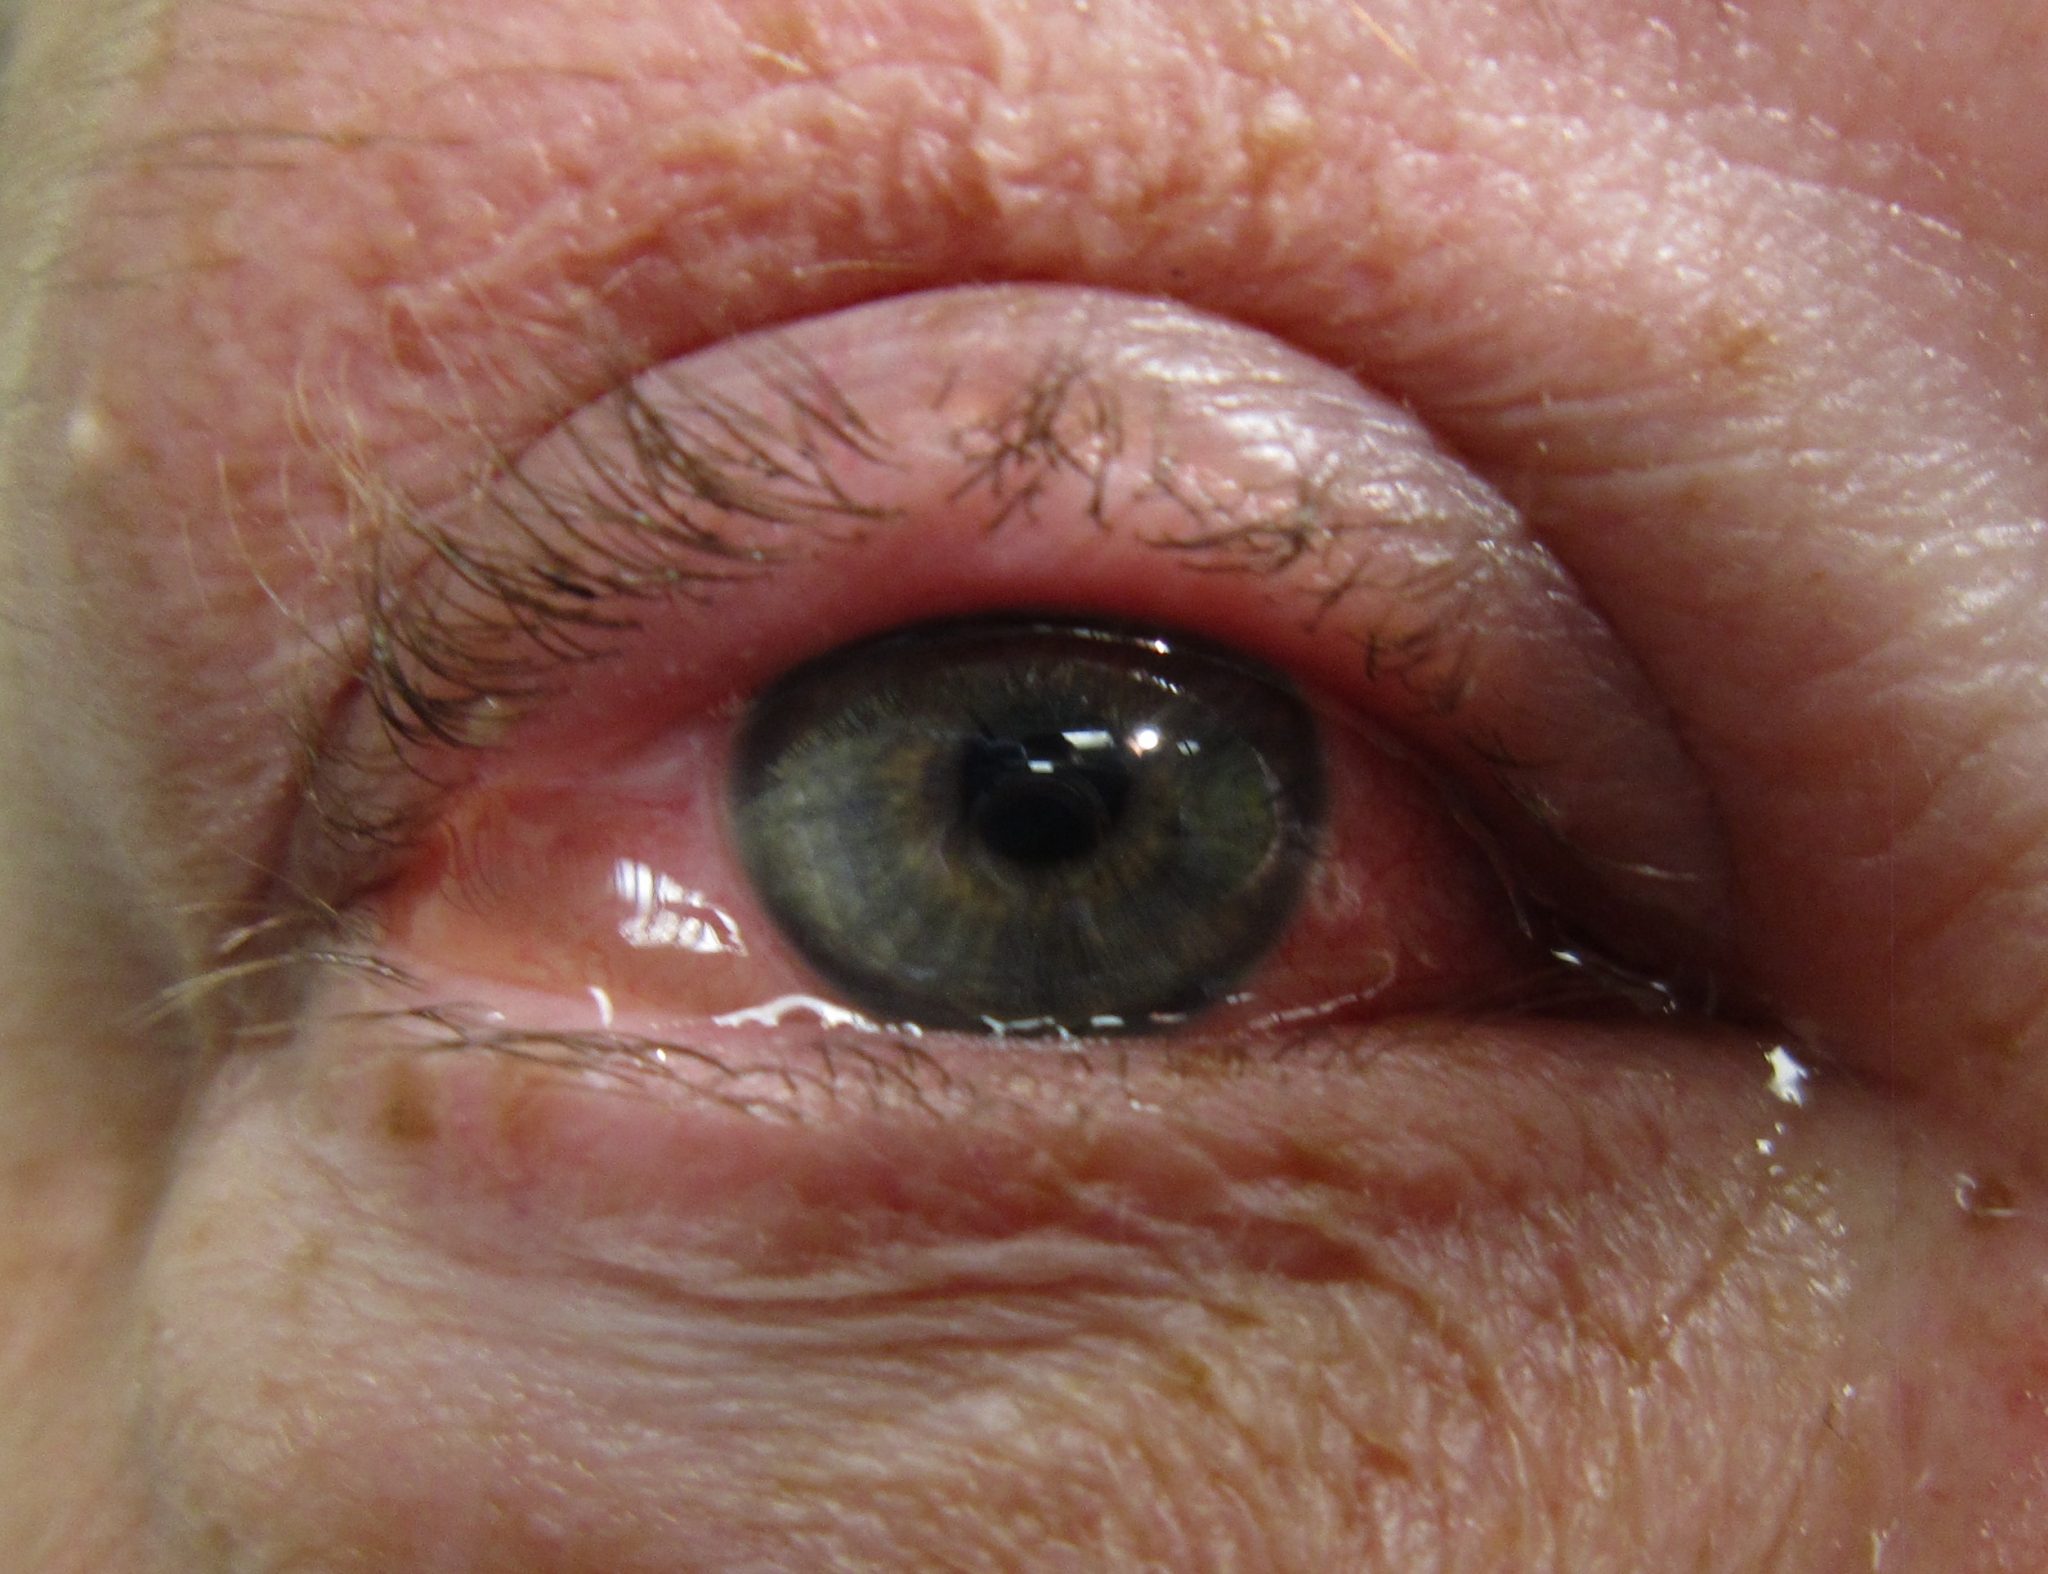 اضرار قطرة بريزولين للعين وأعراضها الجانبية وموانع استخدامها | طبيب العرب